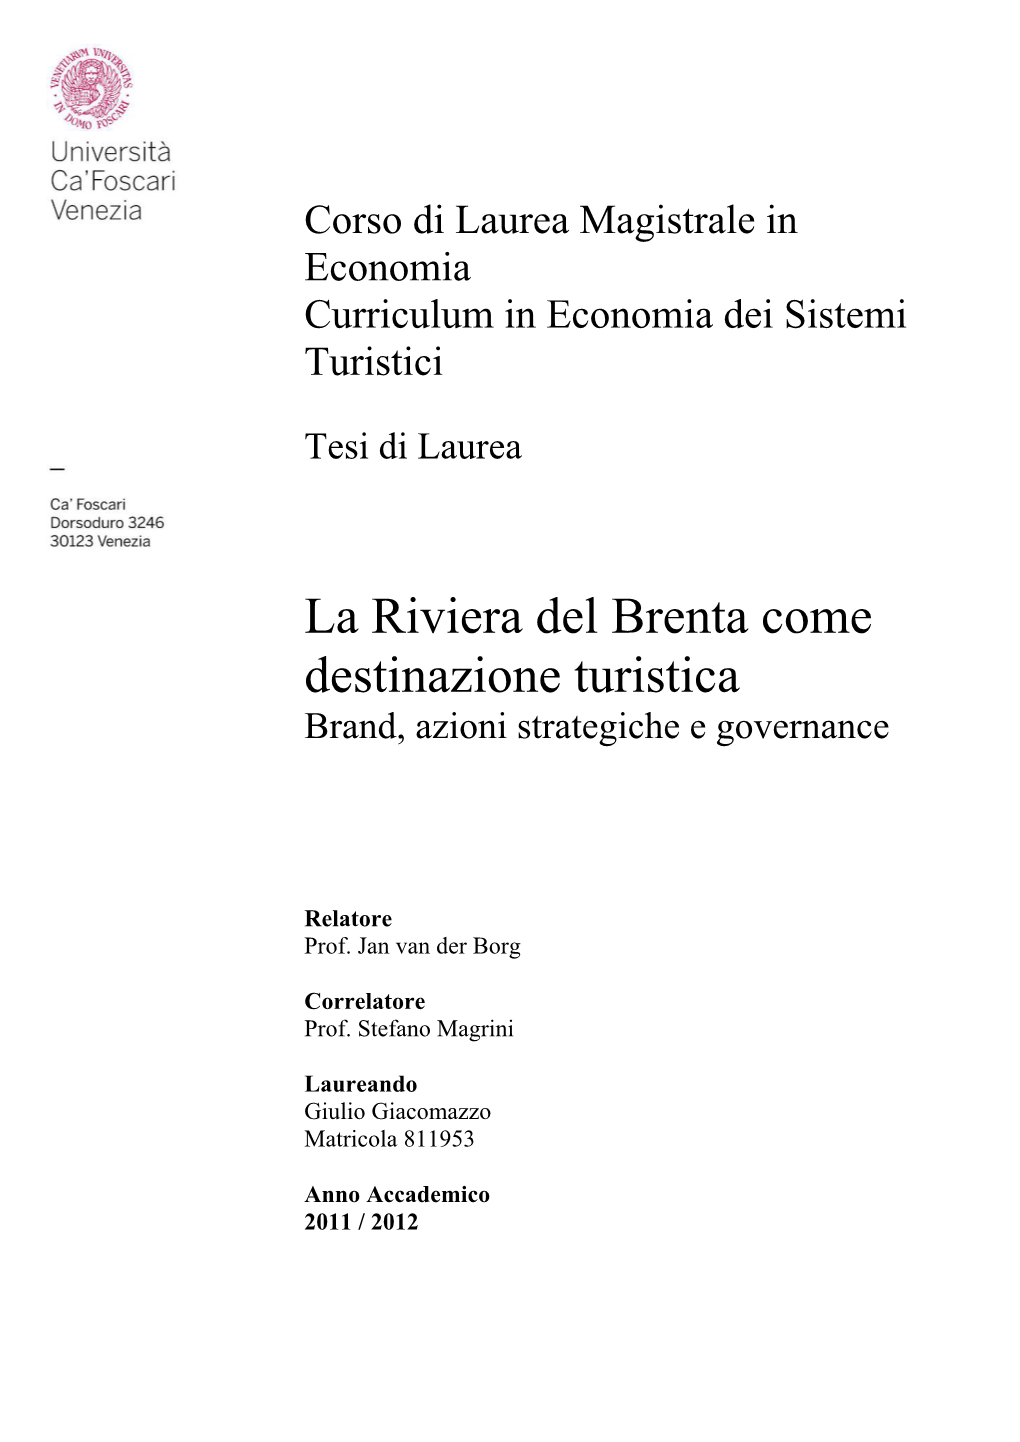 La Riviera Del Brenta Come Destinazione Turistica Brand, Azioni Strategiche E Governance